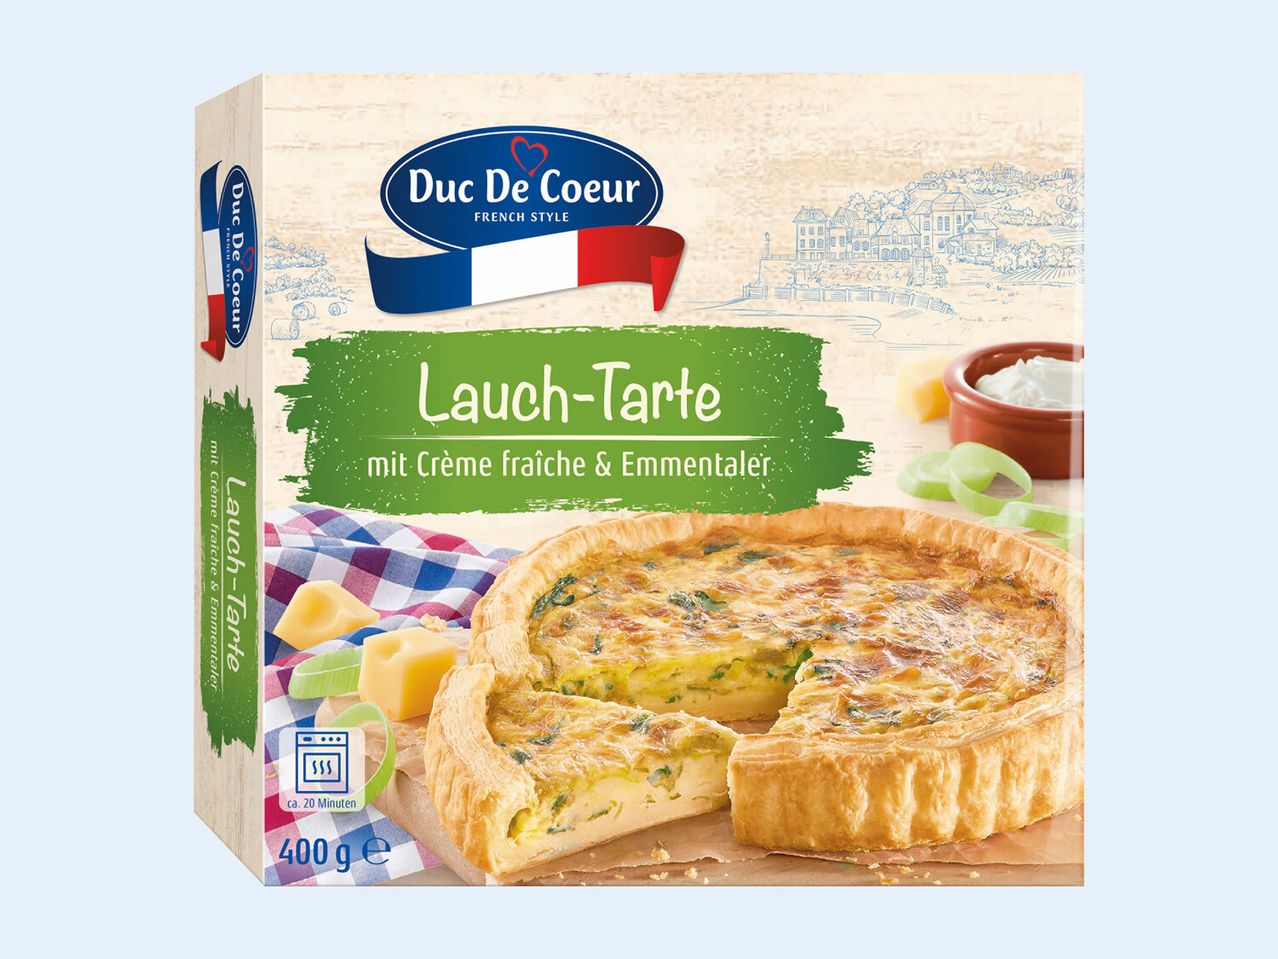 Lauch-Tarte Duc de Coeur